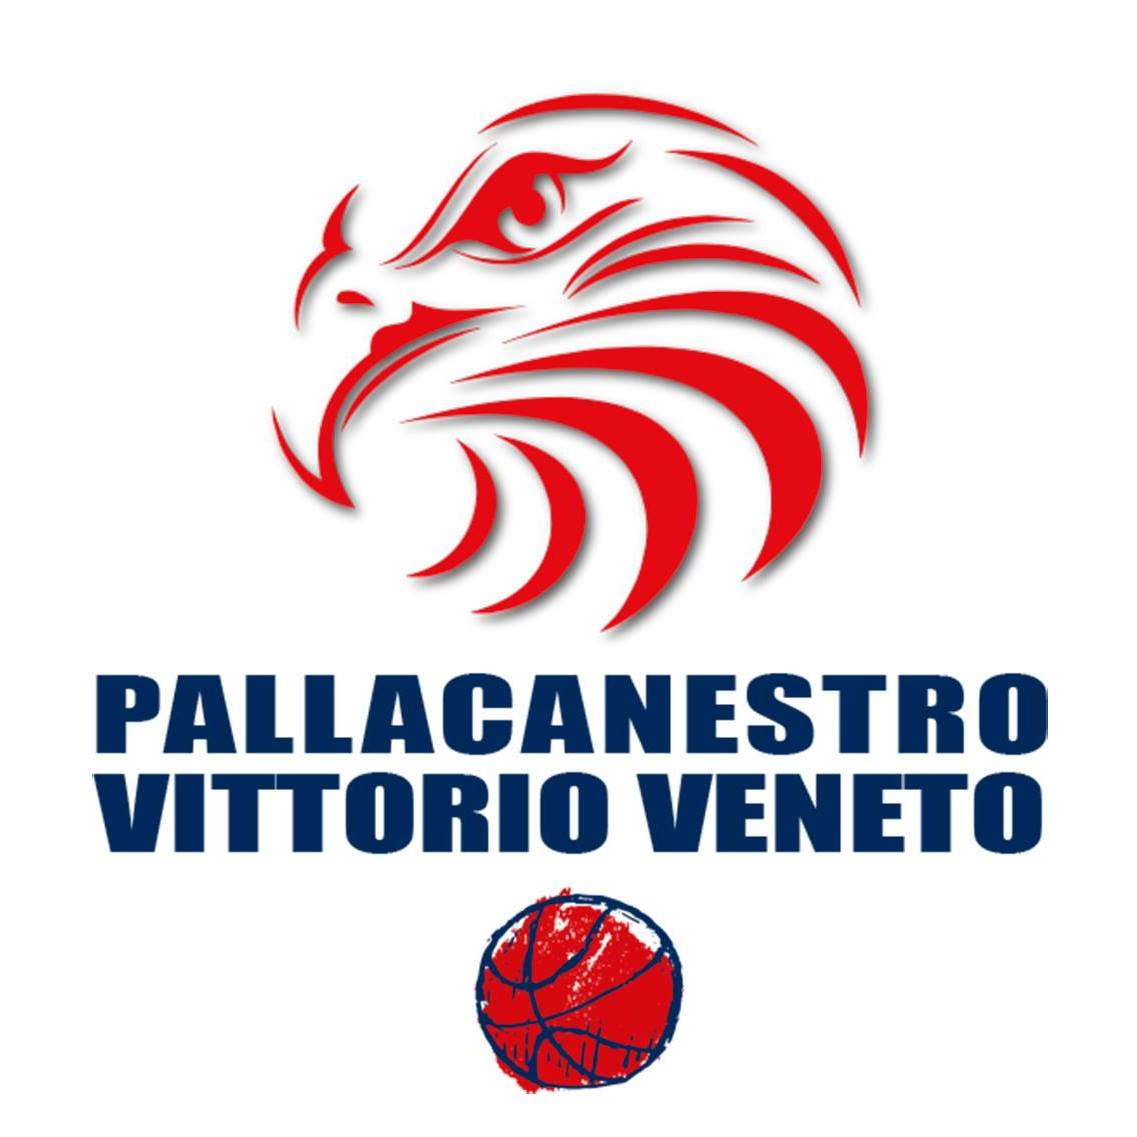 Pallacanestro Vittorio Veneto